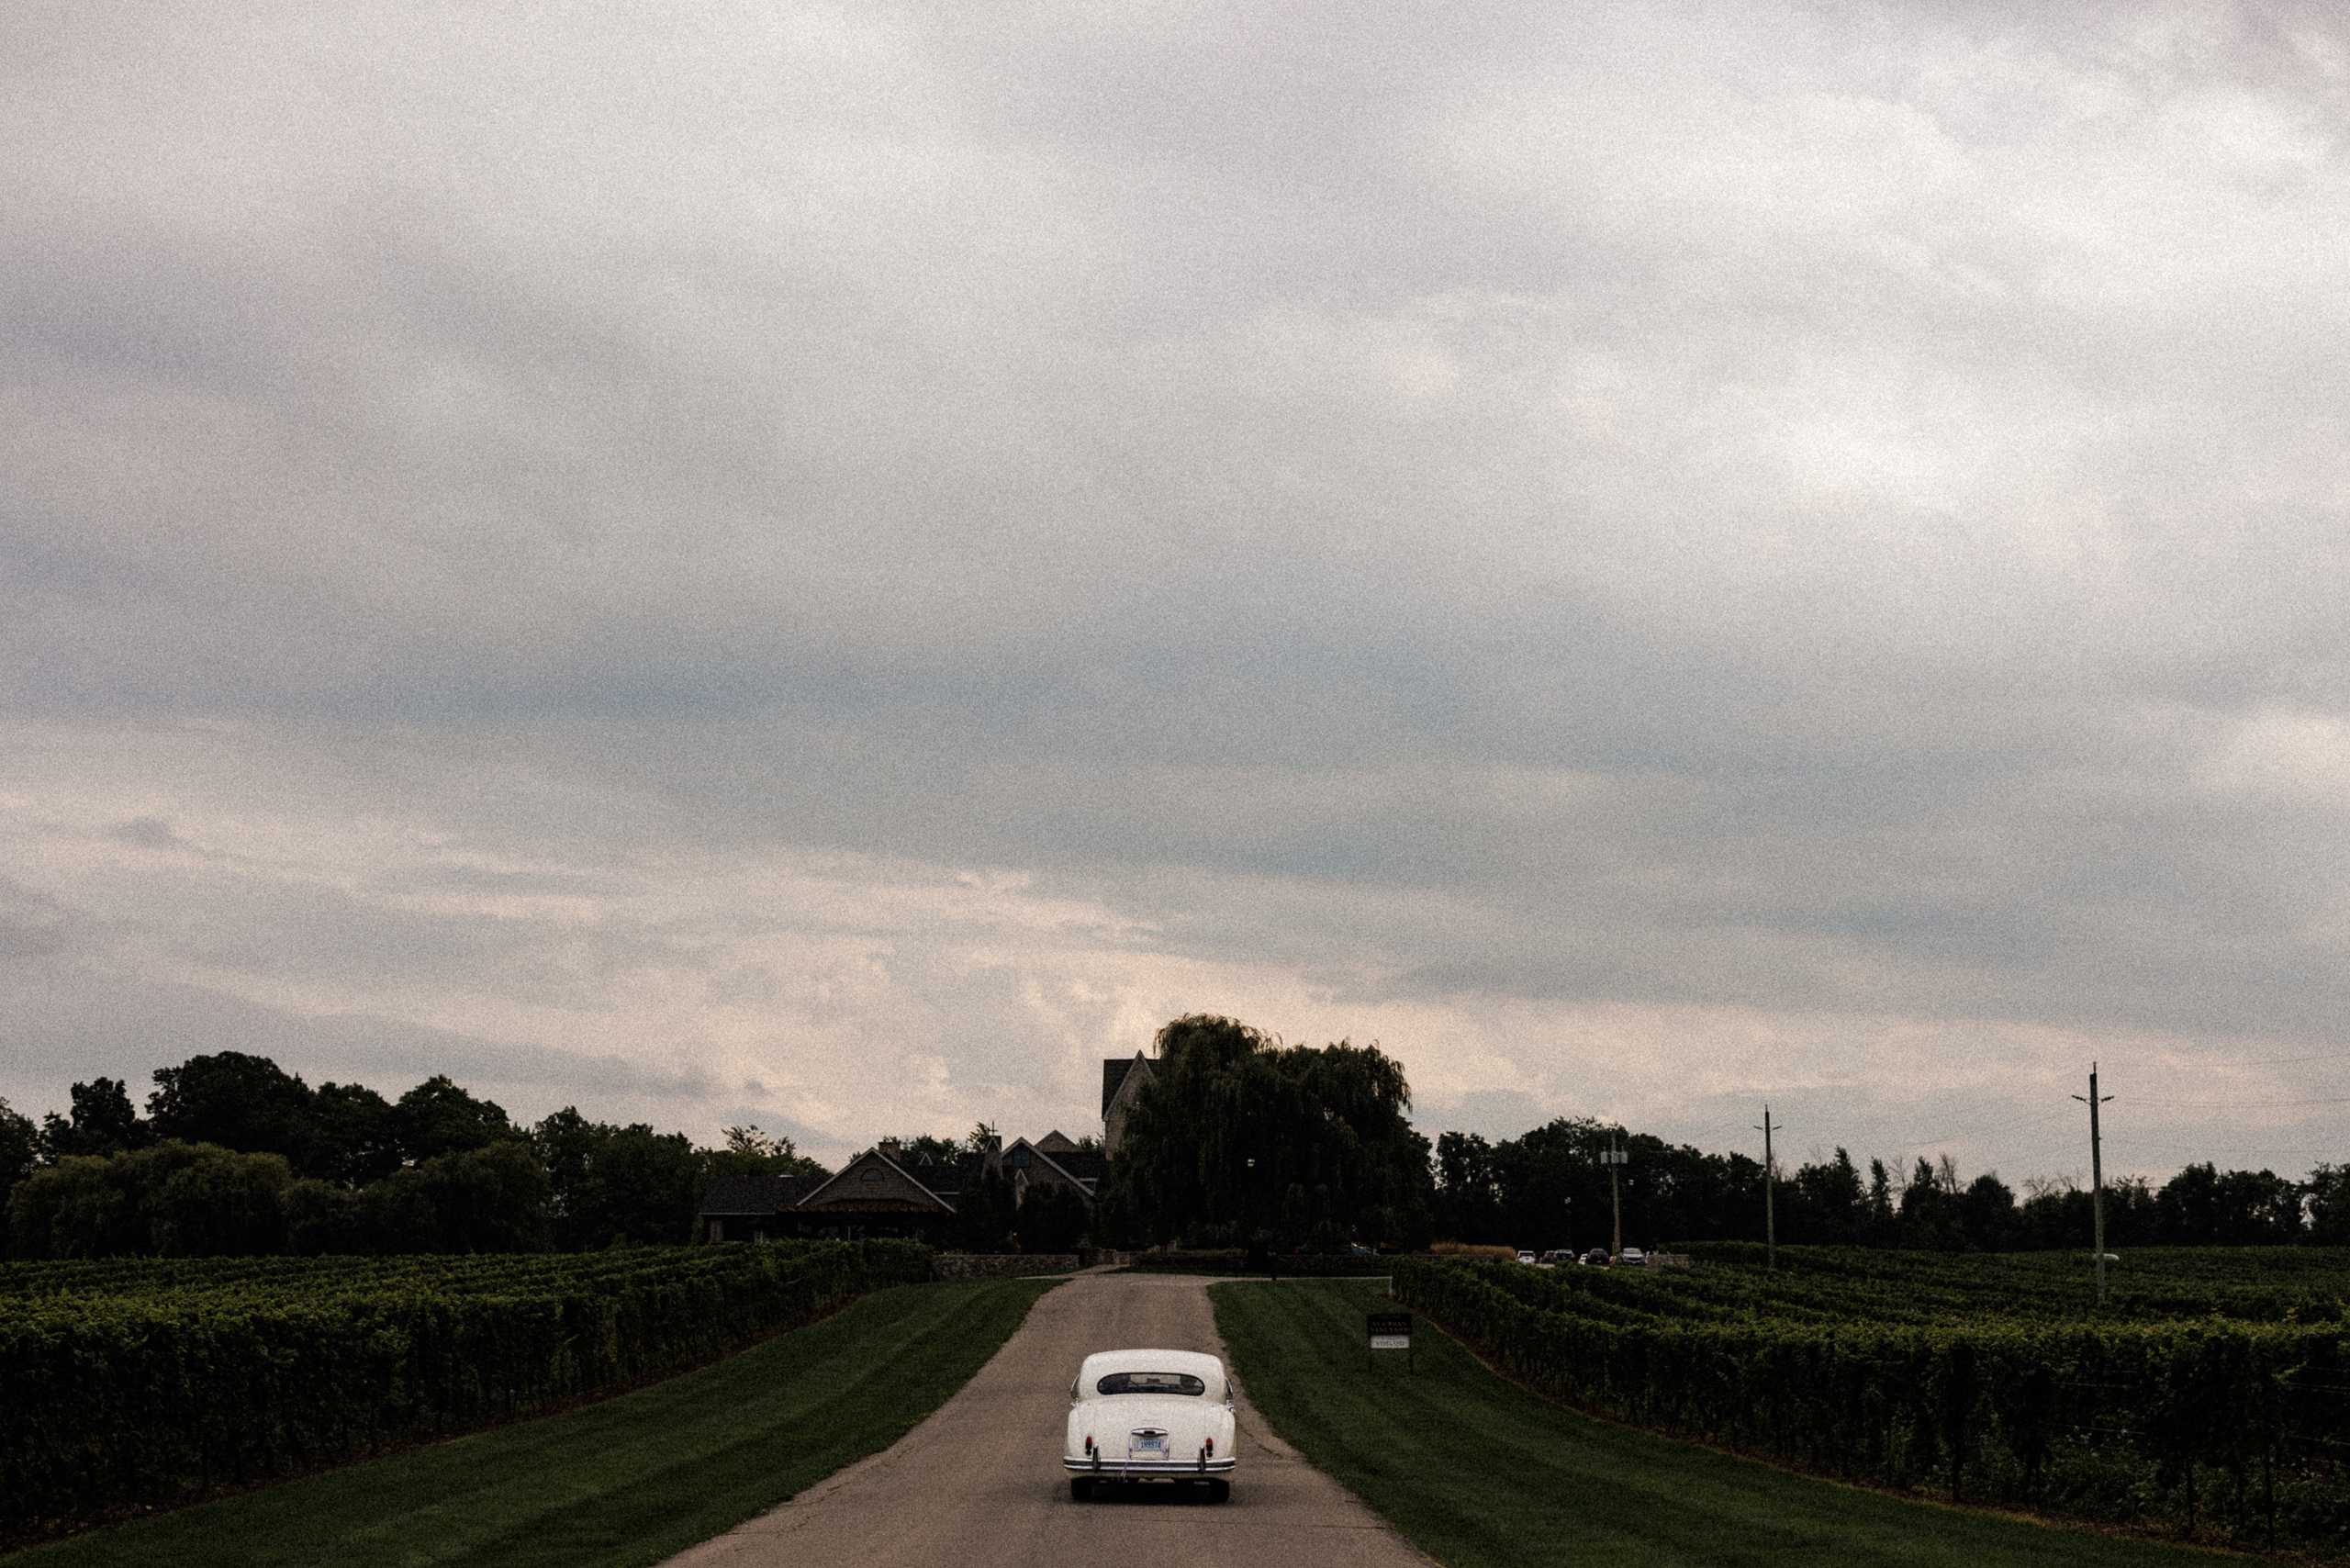 classic rolls royce car driveway vineland estates winery wedding